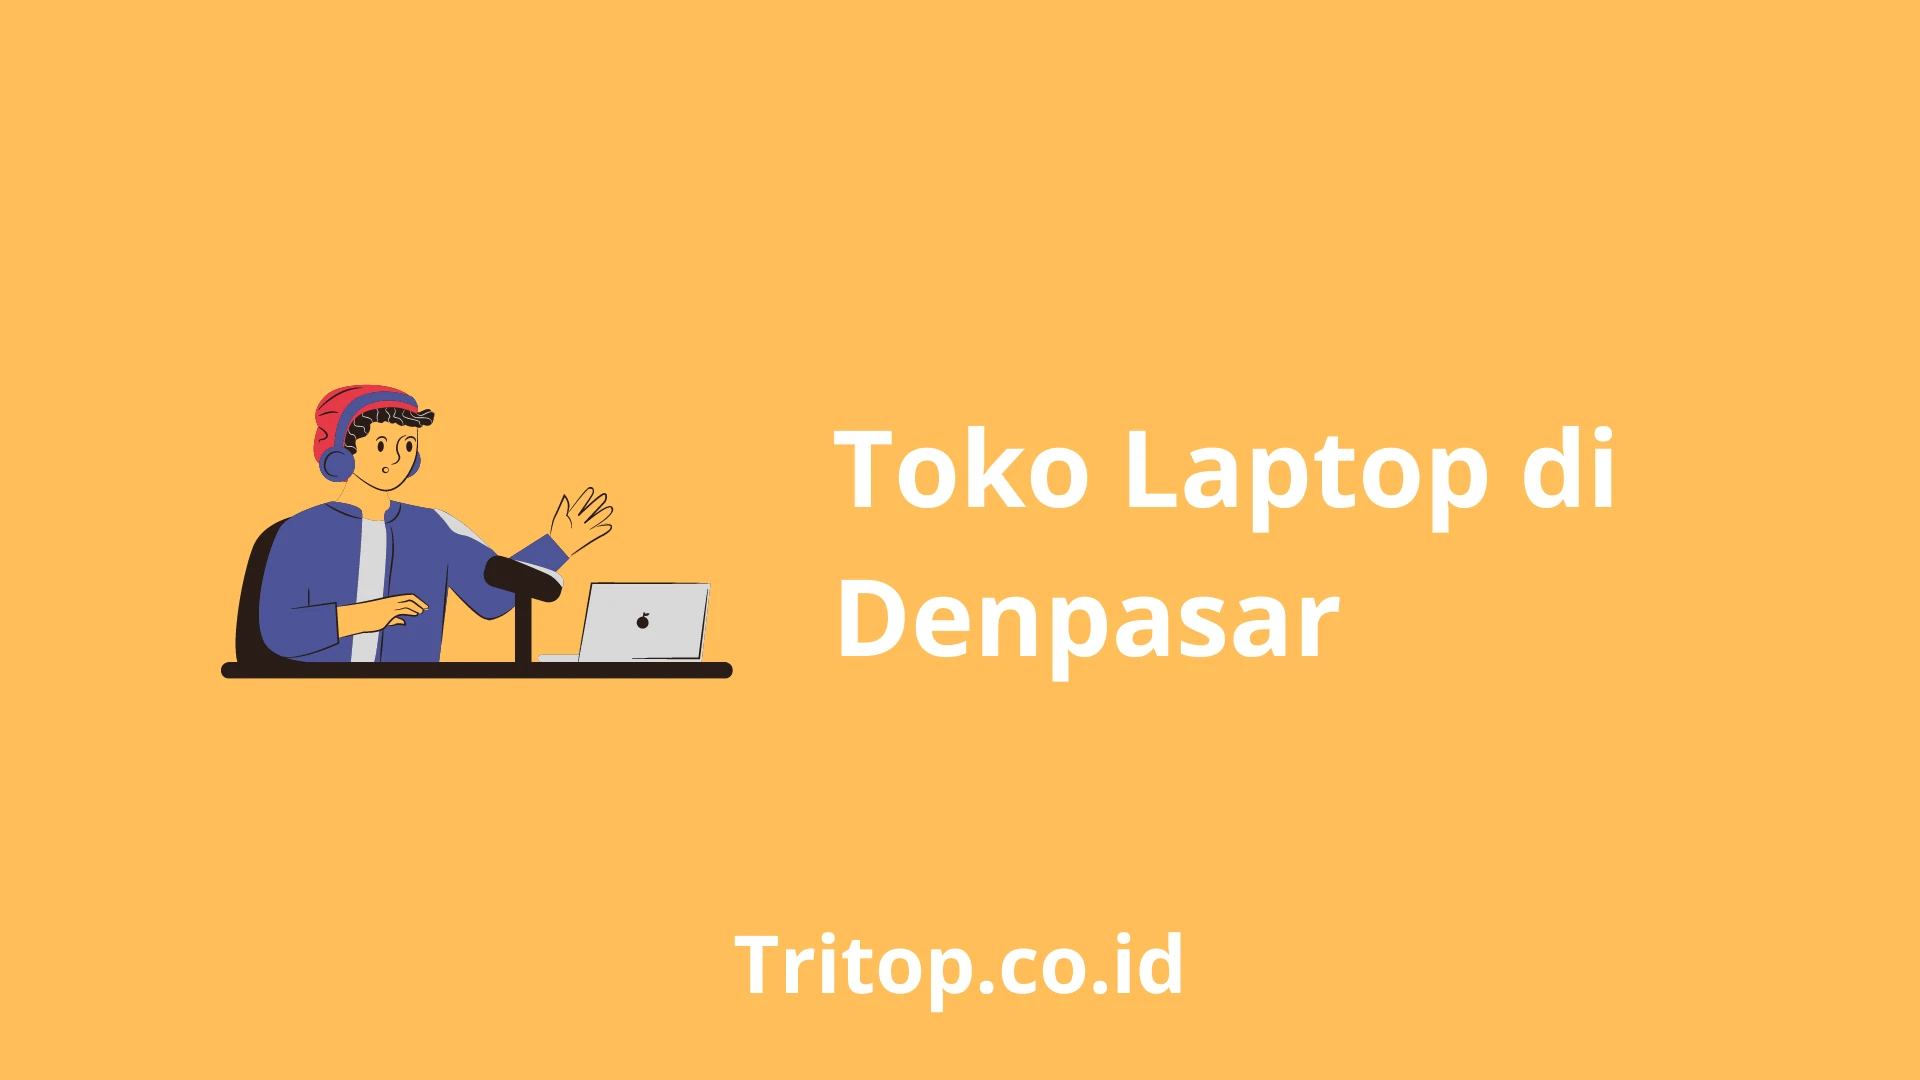 Toko Laptop Denpasar Tritop.co.id